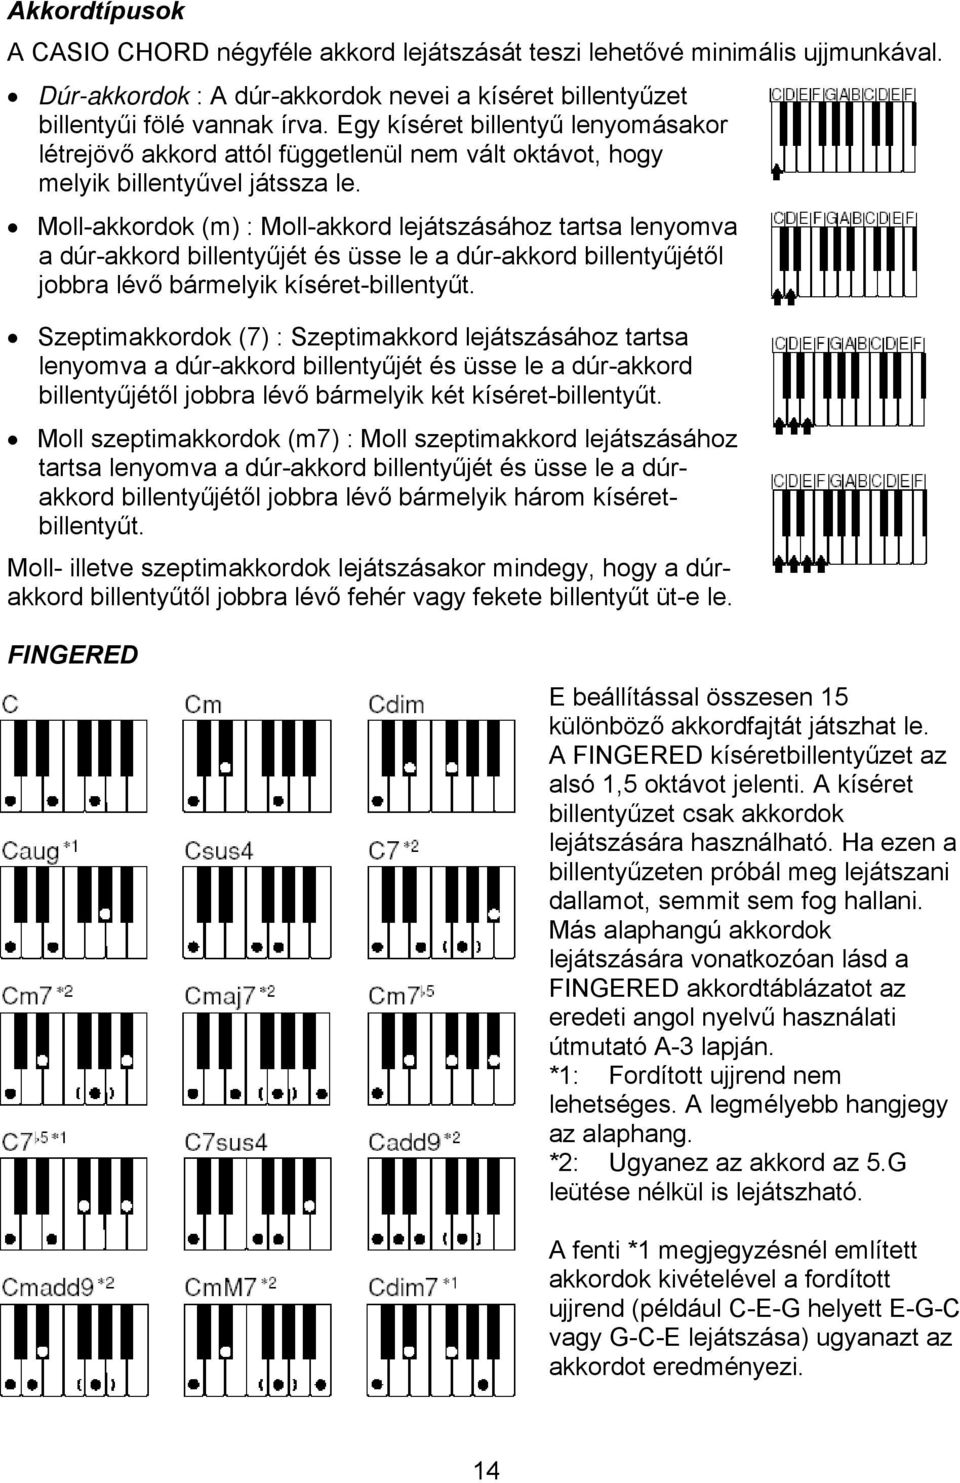 Moll-akkordok (m) : Moll-akkord lejátszásához tartsa lenyomva a dúr-akkord billentyűjét és üsse le a dúr-akkord billentyűjétől jobbra lévő bármelyik kíséret-billentyűt.